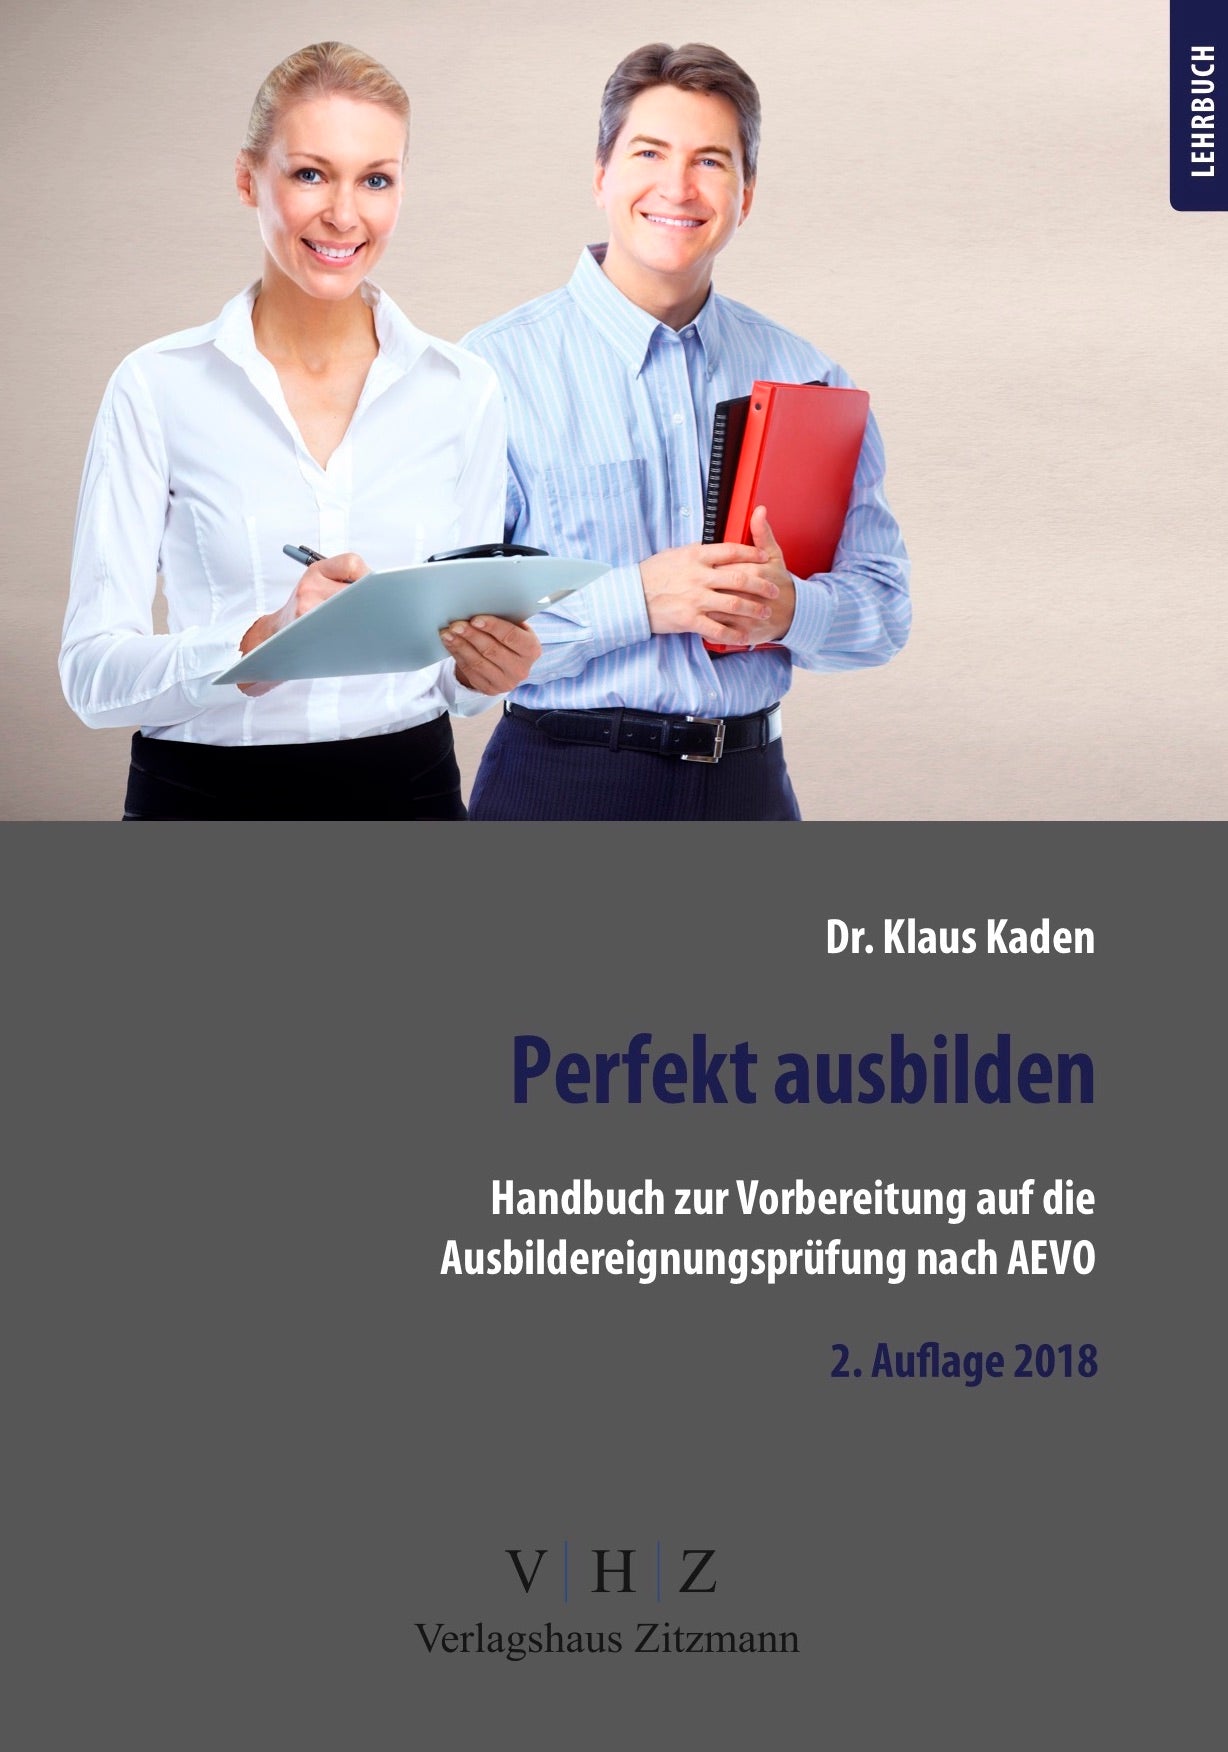 Perfekt ausbilden - Handbuch zur Vorbereitung auf die Ausbildereignungsprüfung nach AEVO